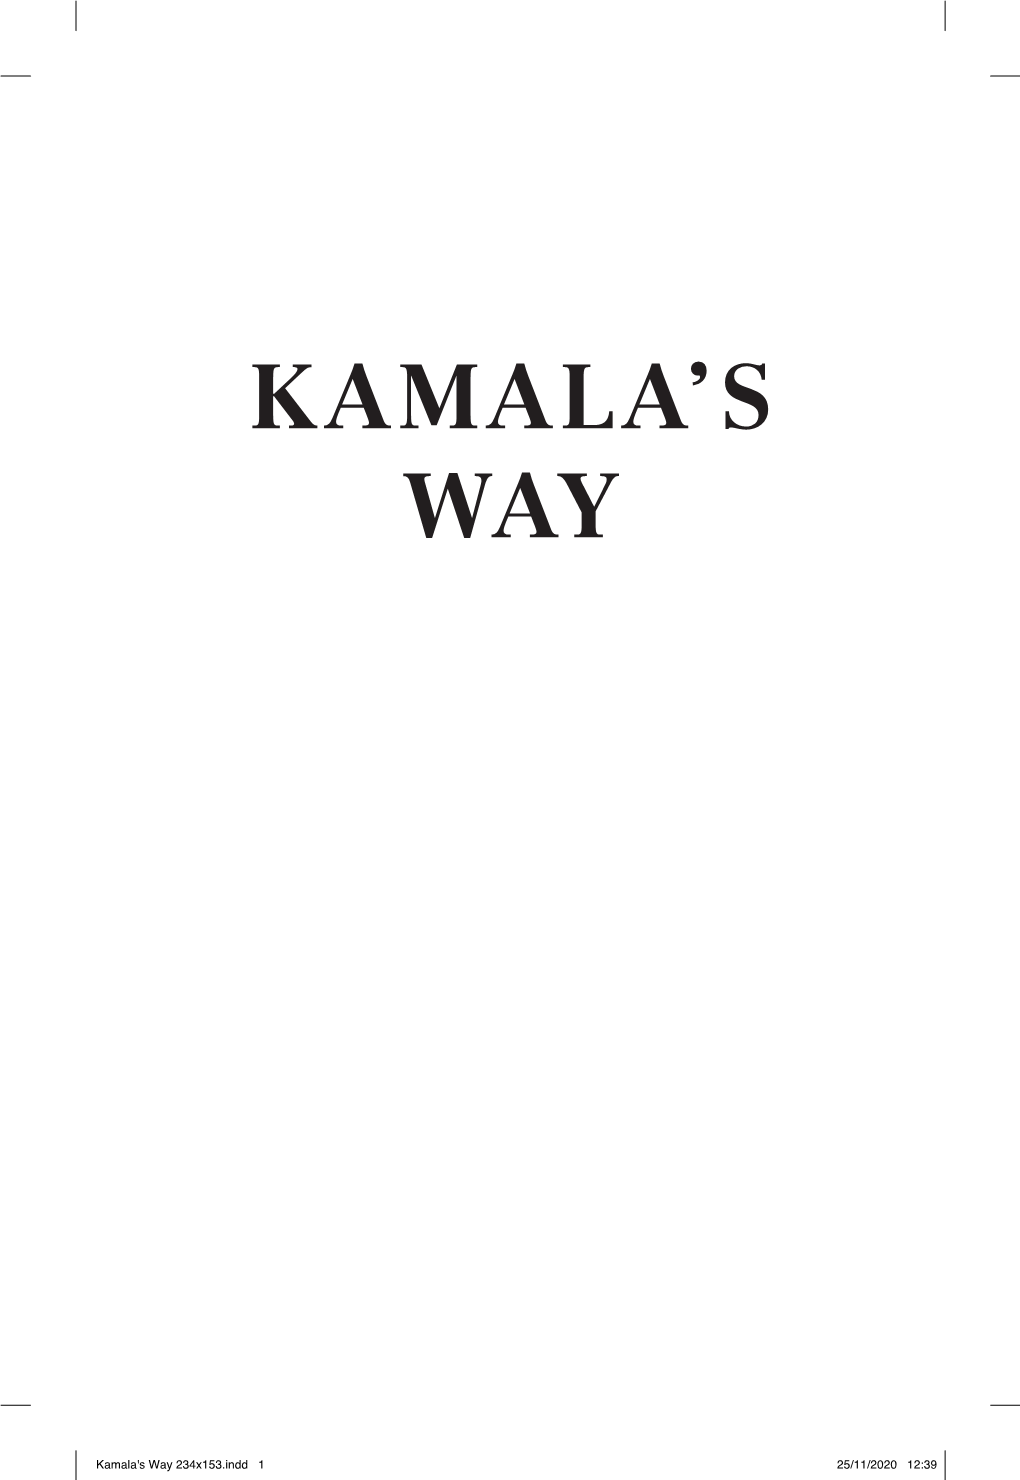 Kamala'skamala's Way Way CC.Indd 234X153.Indd 1 1 25/11/202025/11/2020 10:3212:39 KAMALA’S WAY an American Life